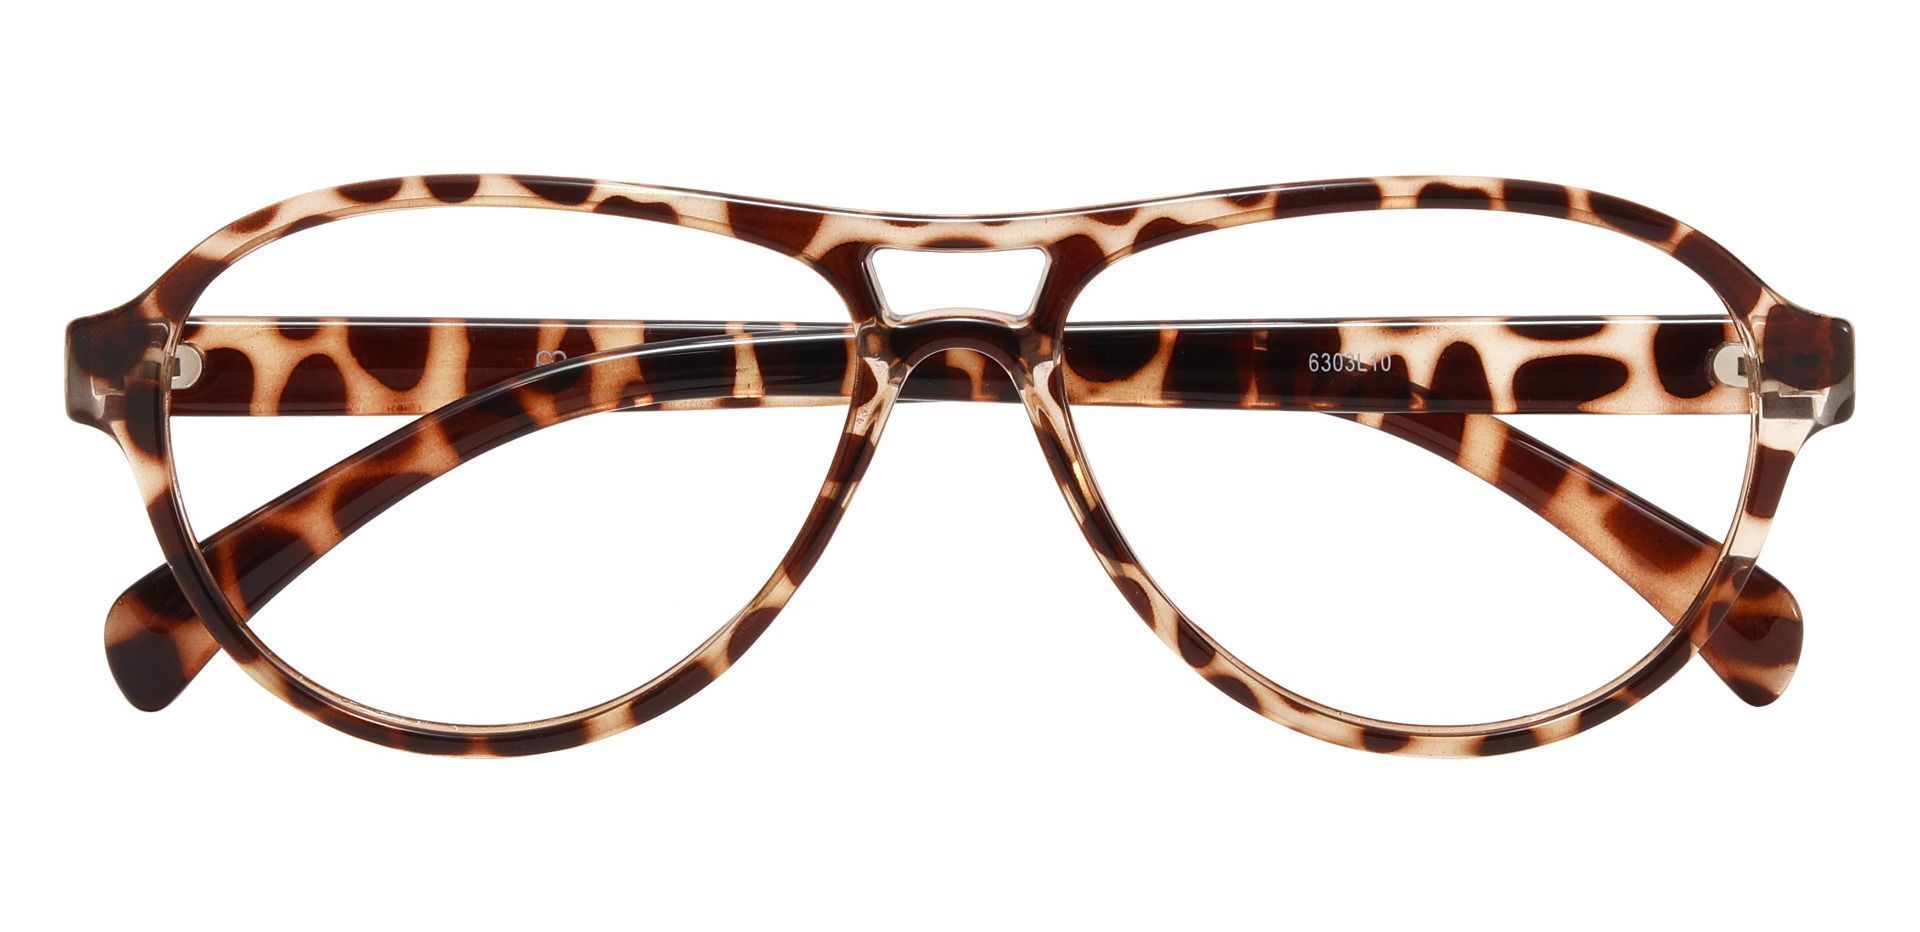 Sosa Aviator Prescription Glasses - Leopard